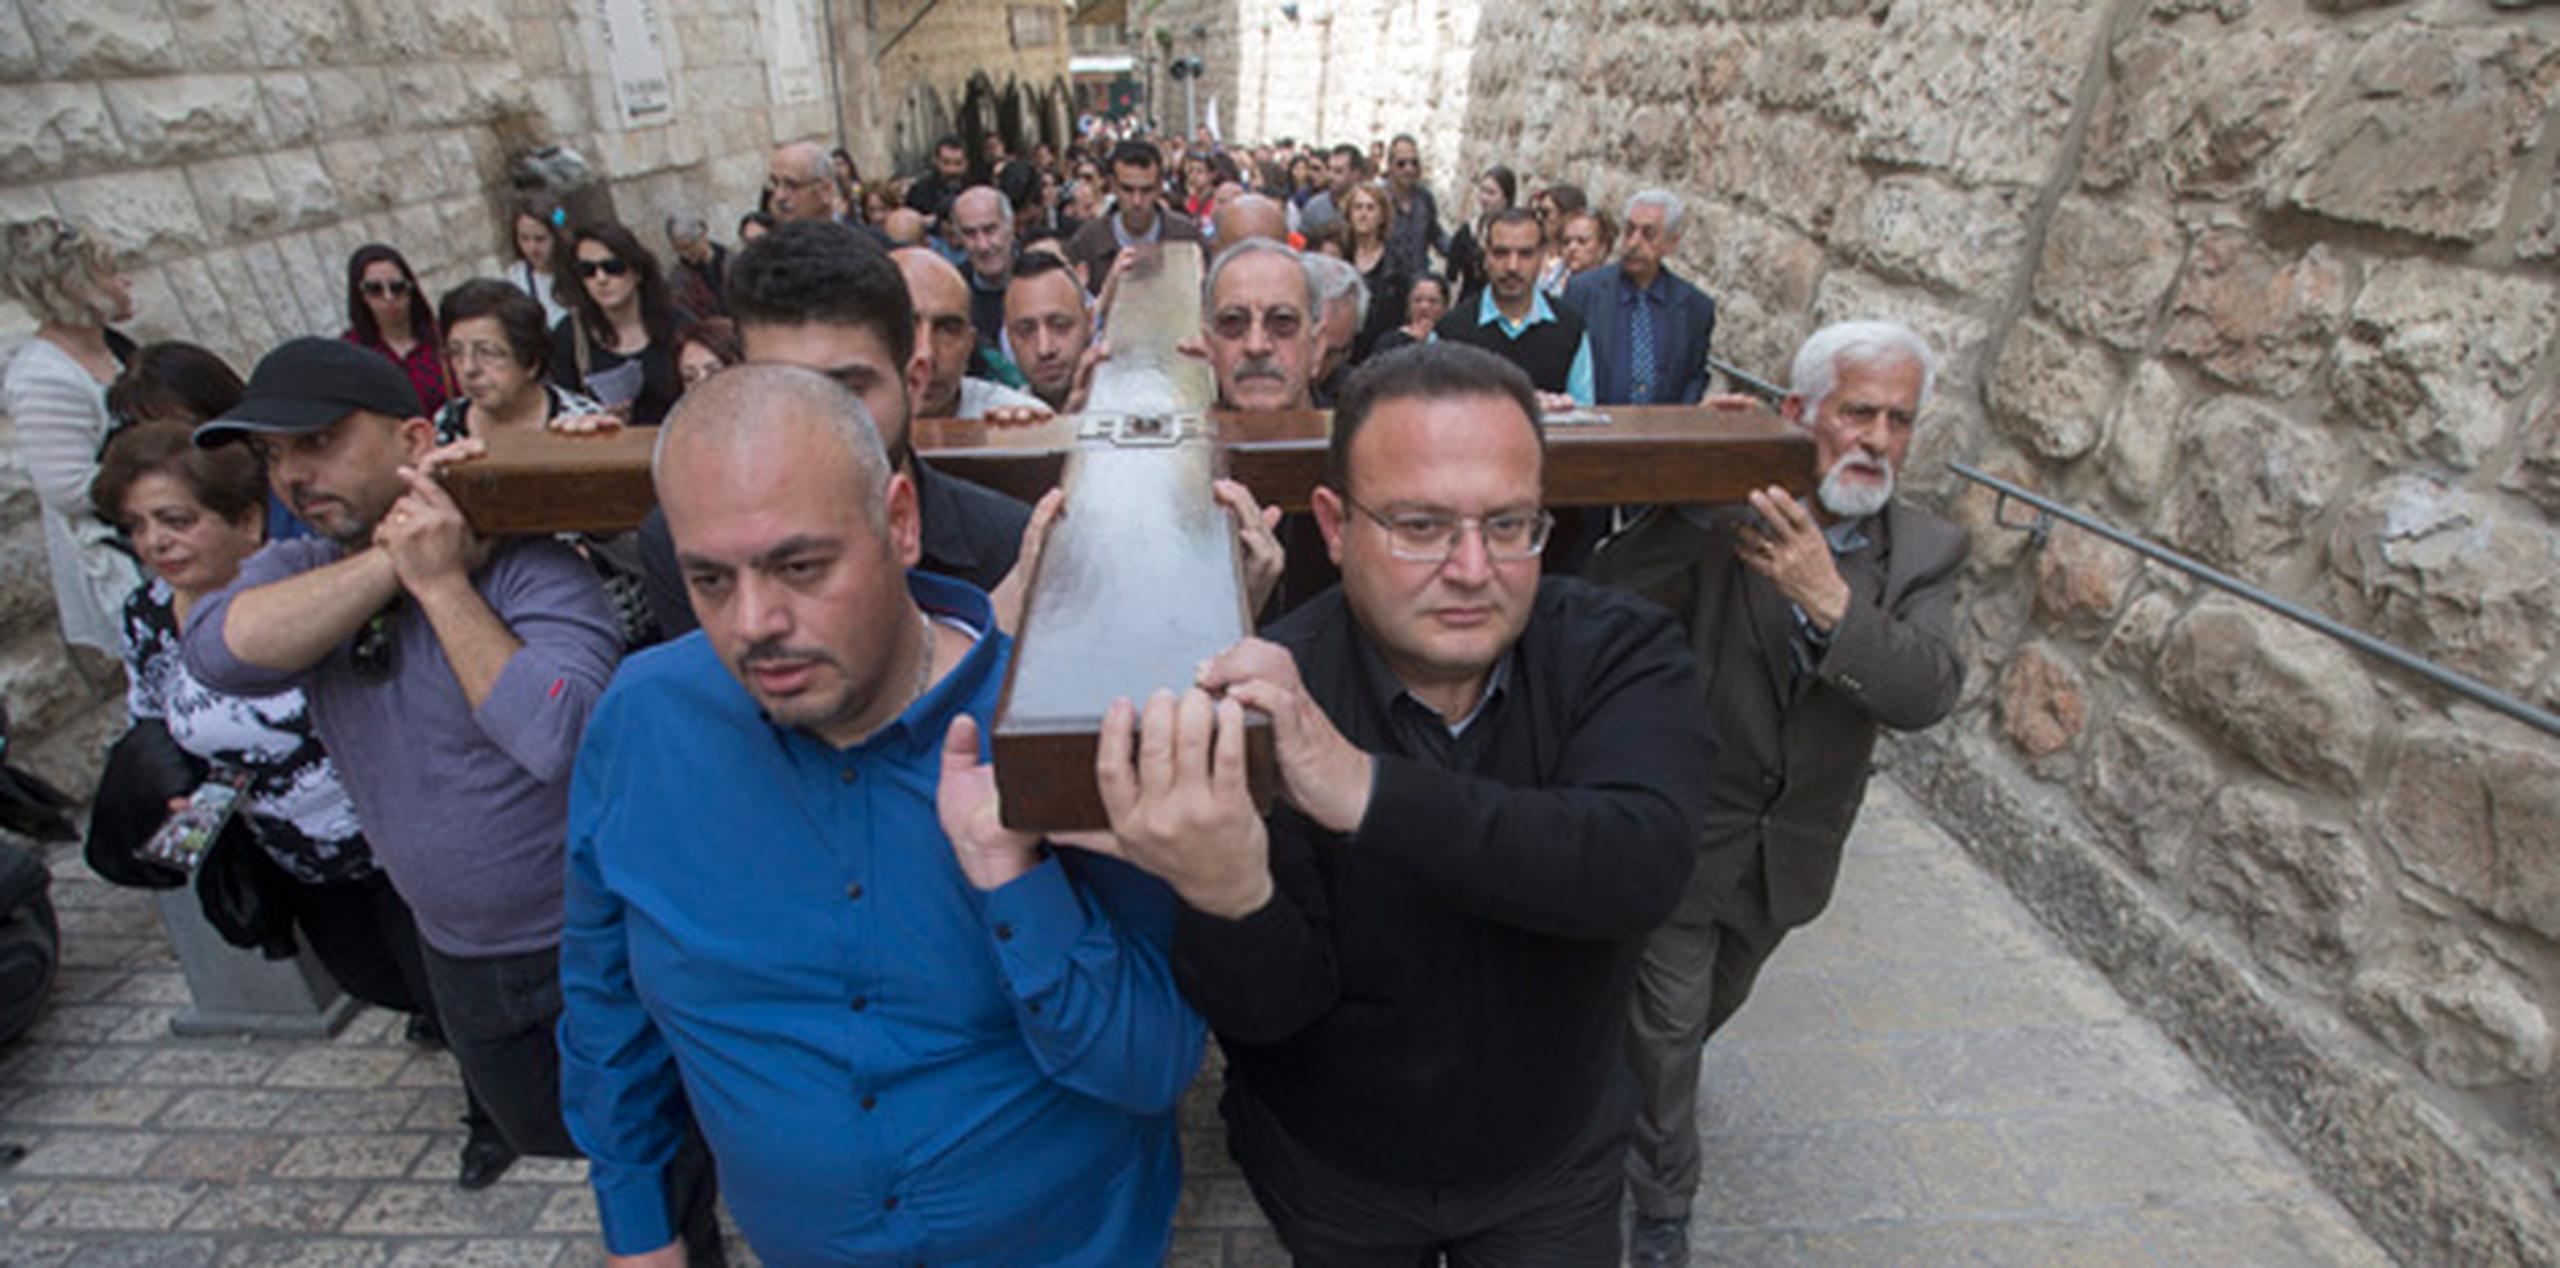 Peregrinos católicos cargan con la cruz durante un a procesión de Viernes Santo en la Vía Dolorosa dentro de la Ciudad Vieja de Jerusalén. (EFE/Atef Safadi)
